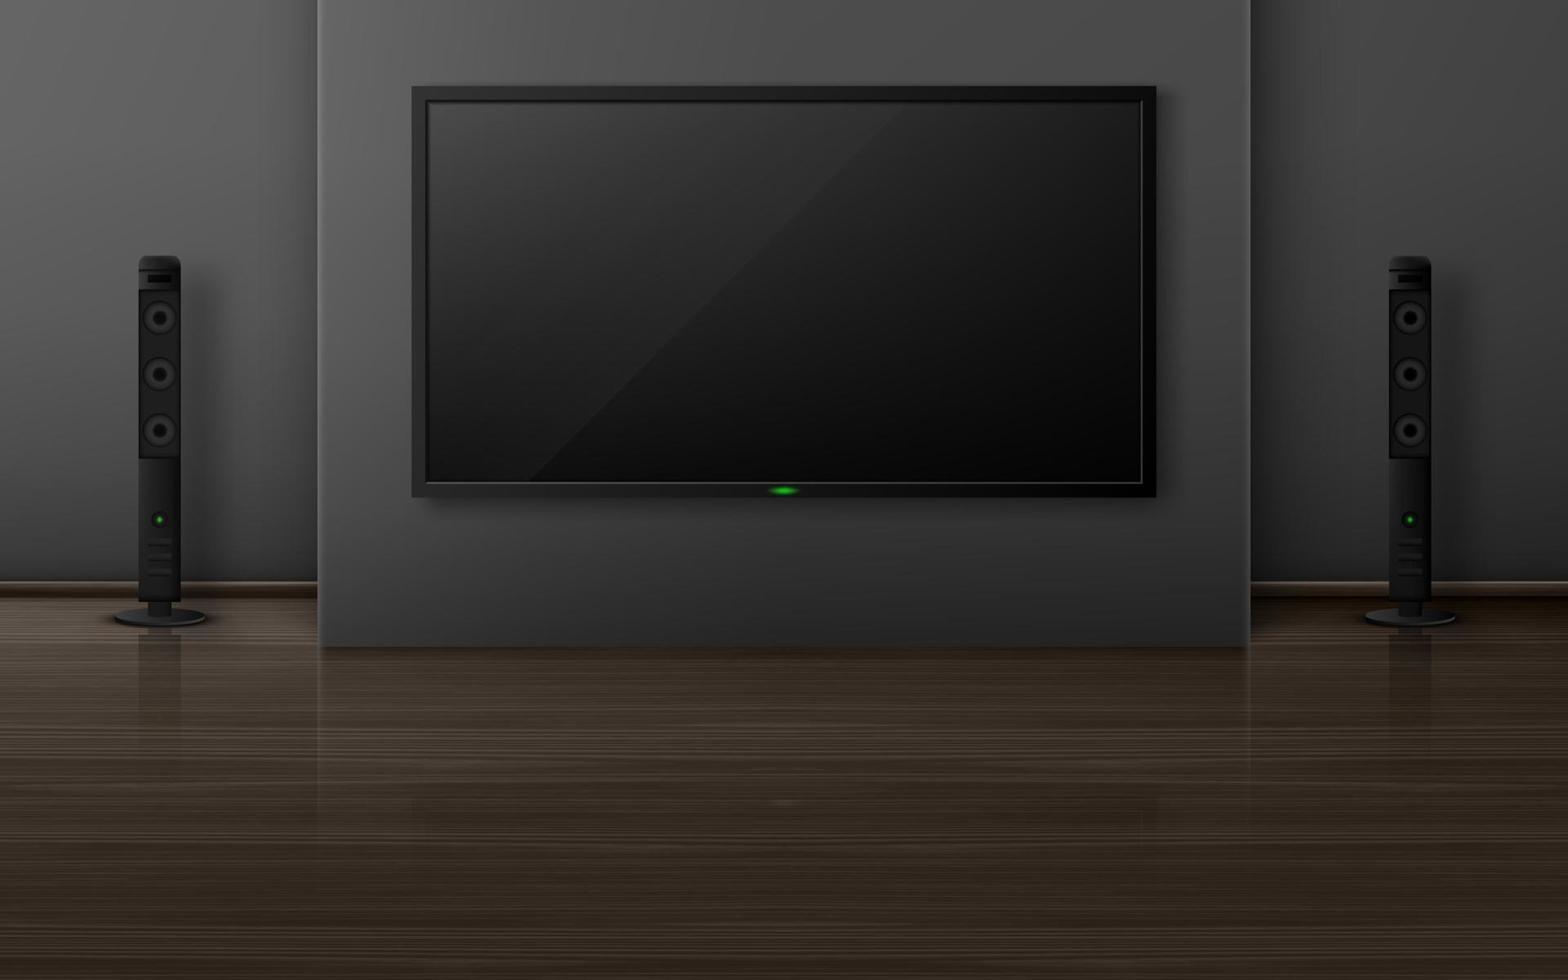 aparelho de tv com dinâmica no interior da sala de estar. vetor